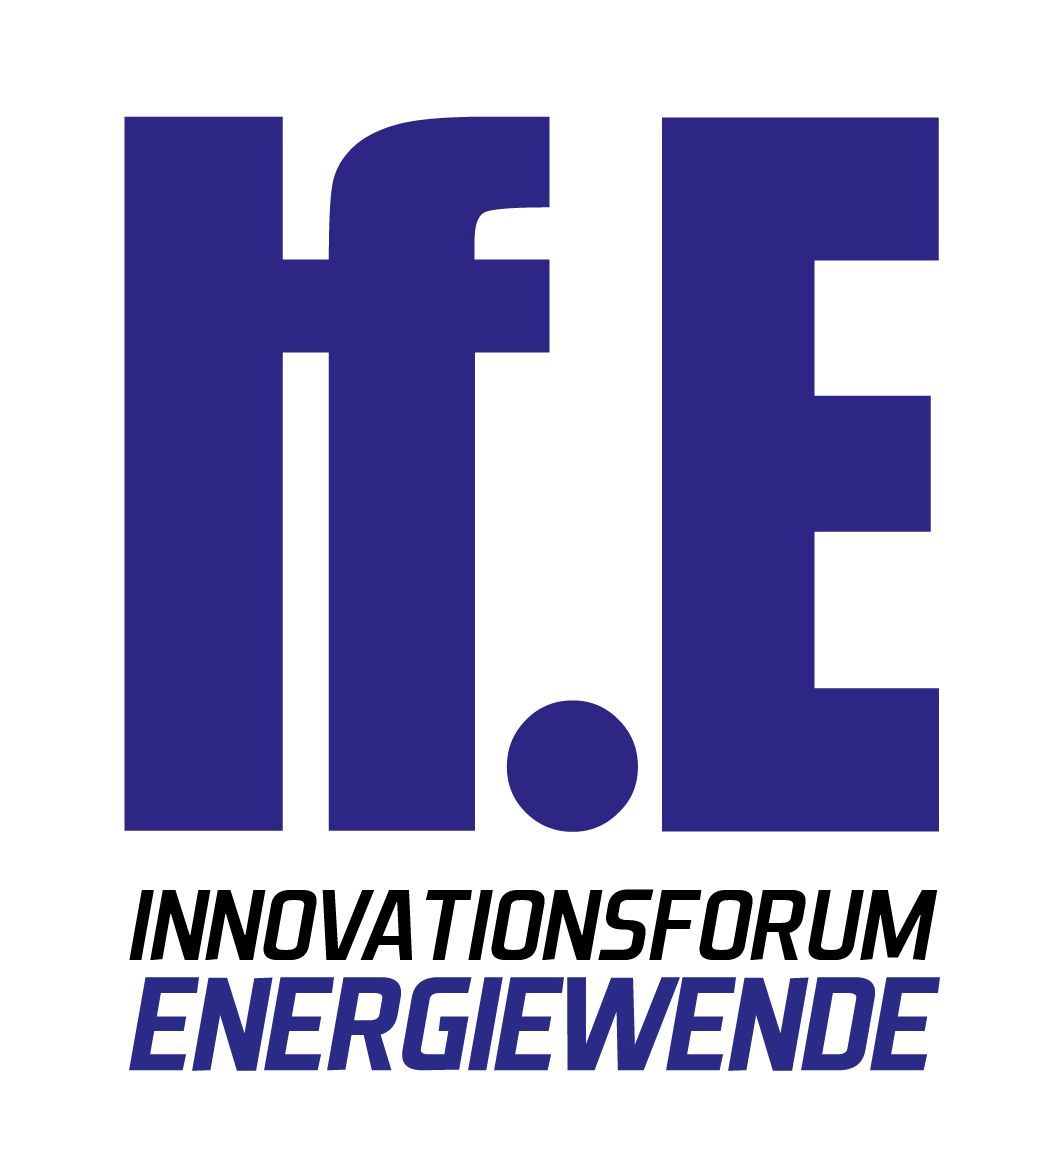 Das Logo vom Innovationsforum Energiewende. Große dunkelviolette Buchstaben "If.E" auf dem weißen Hintergrund.